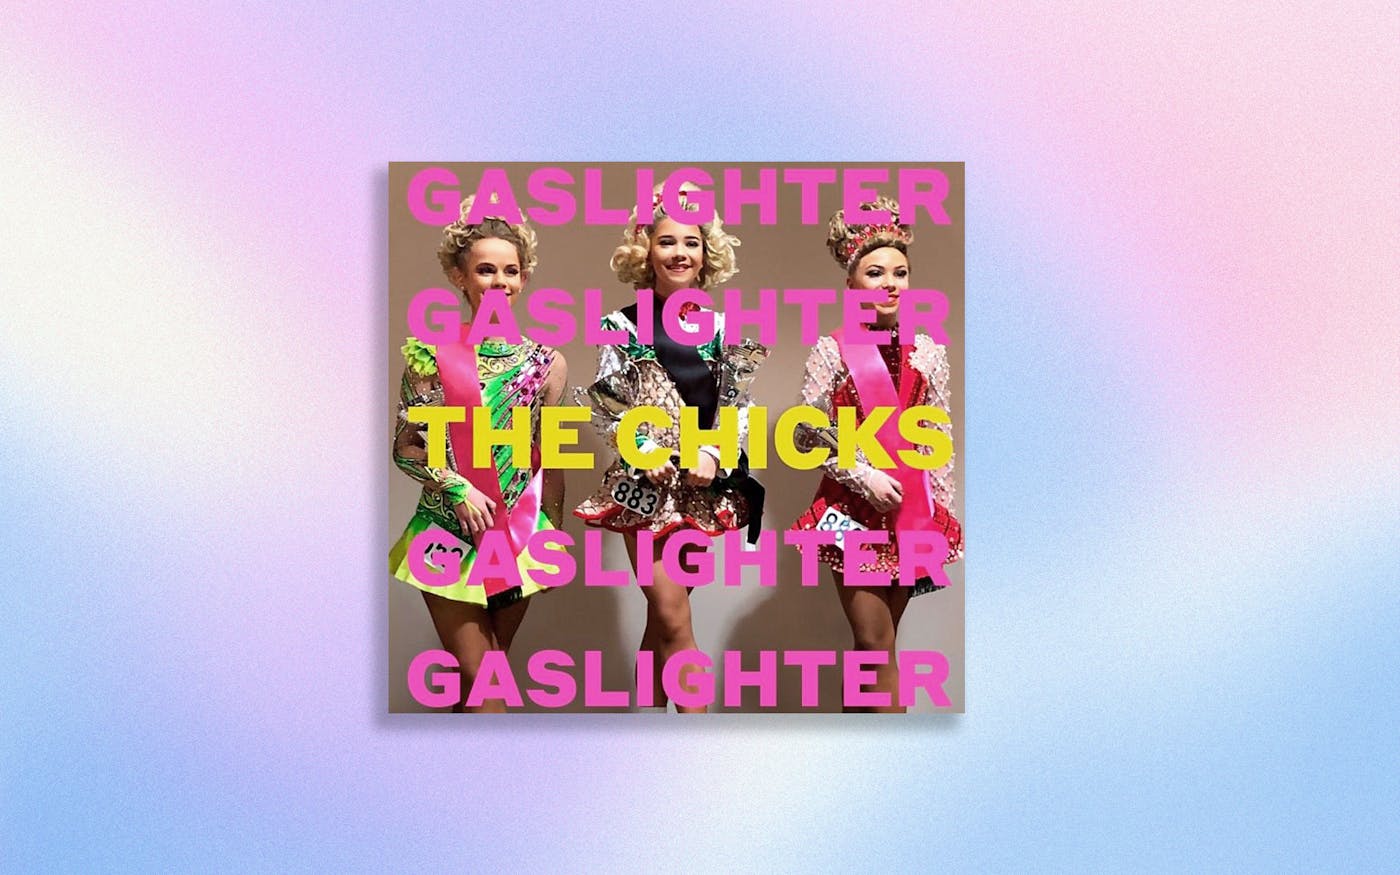 Gaslighter album tracklist info